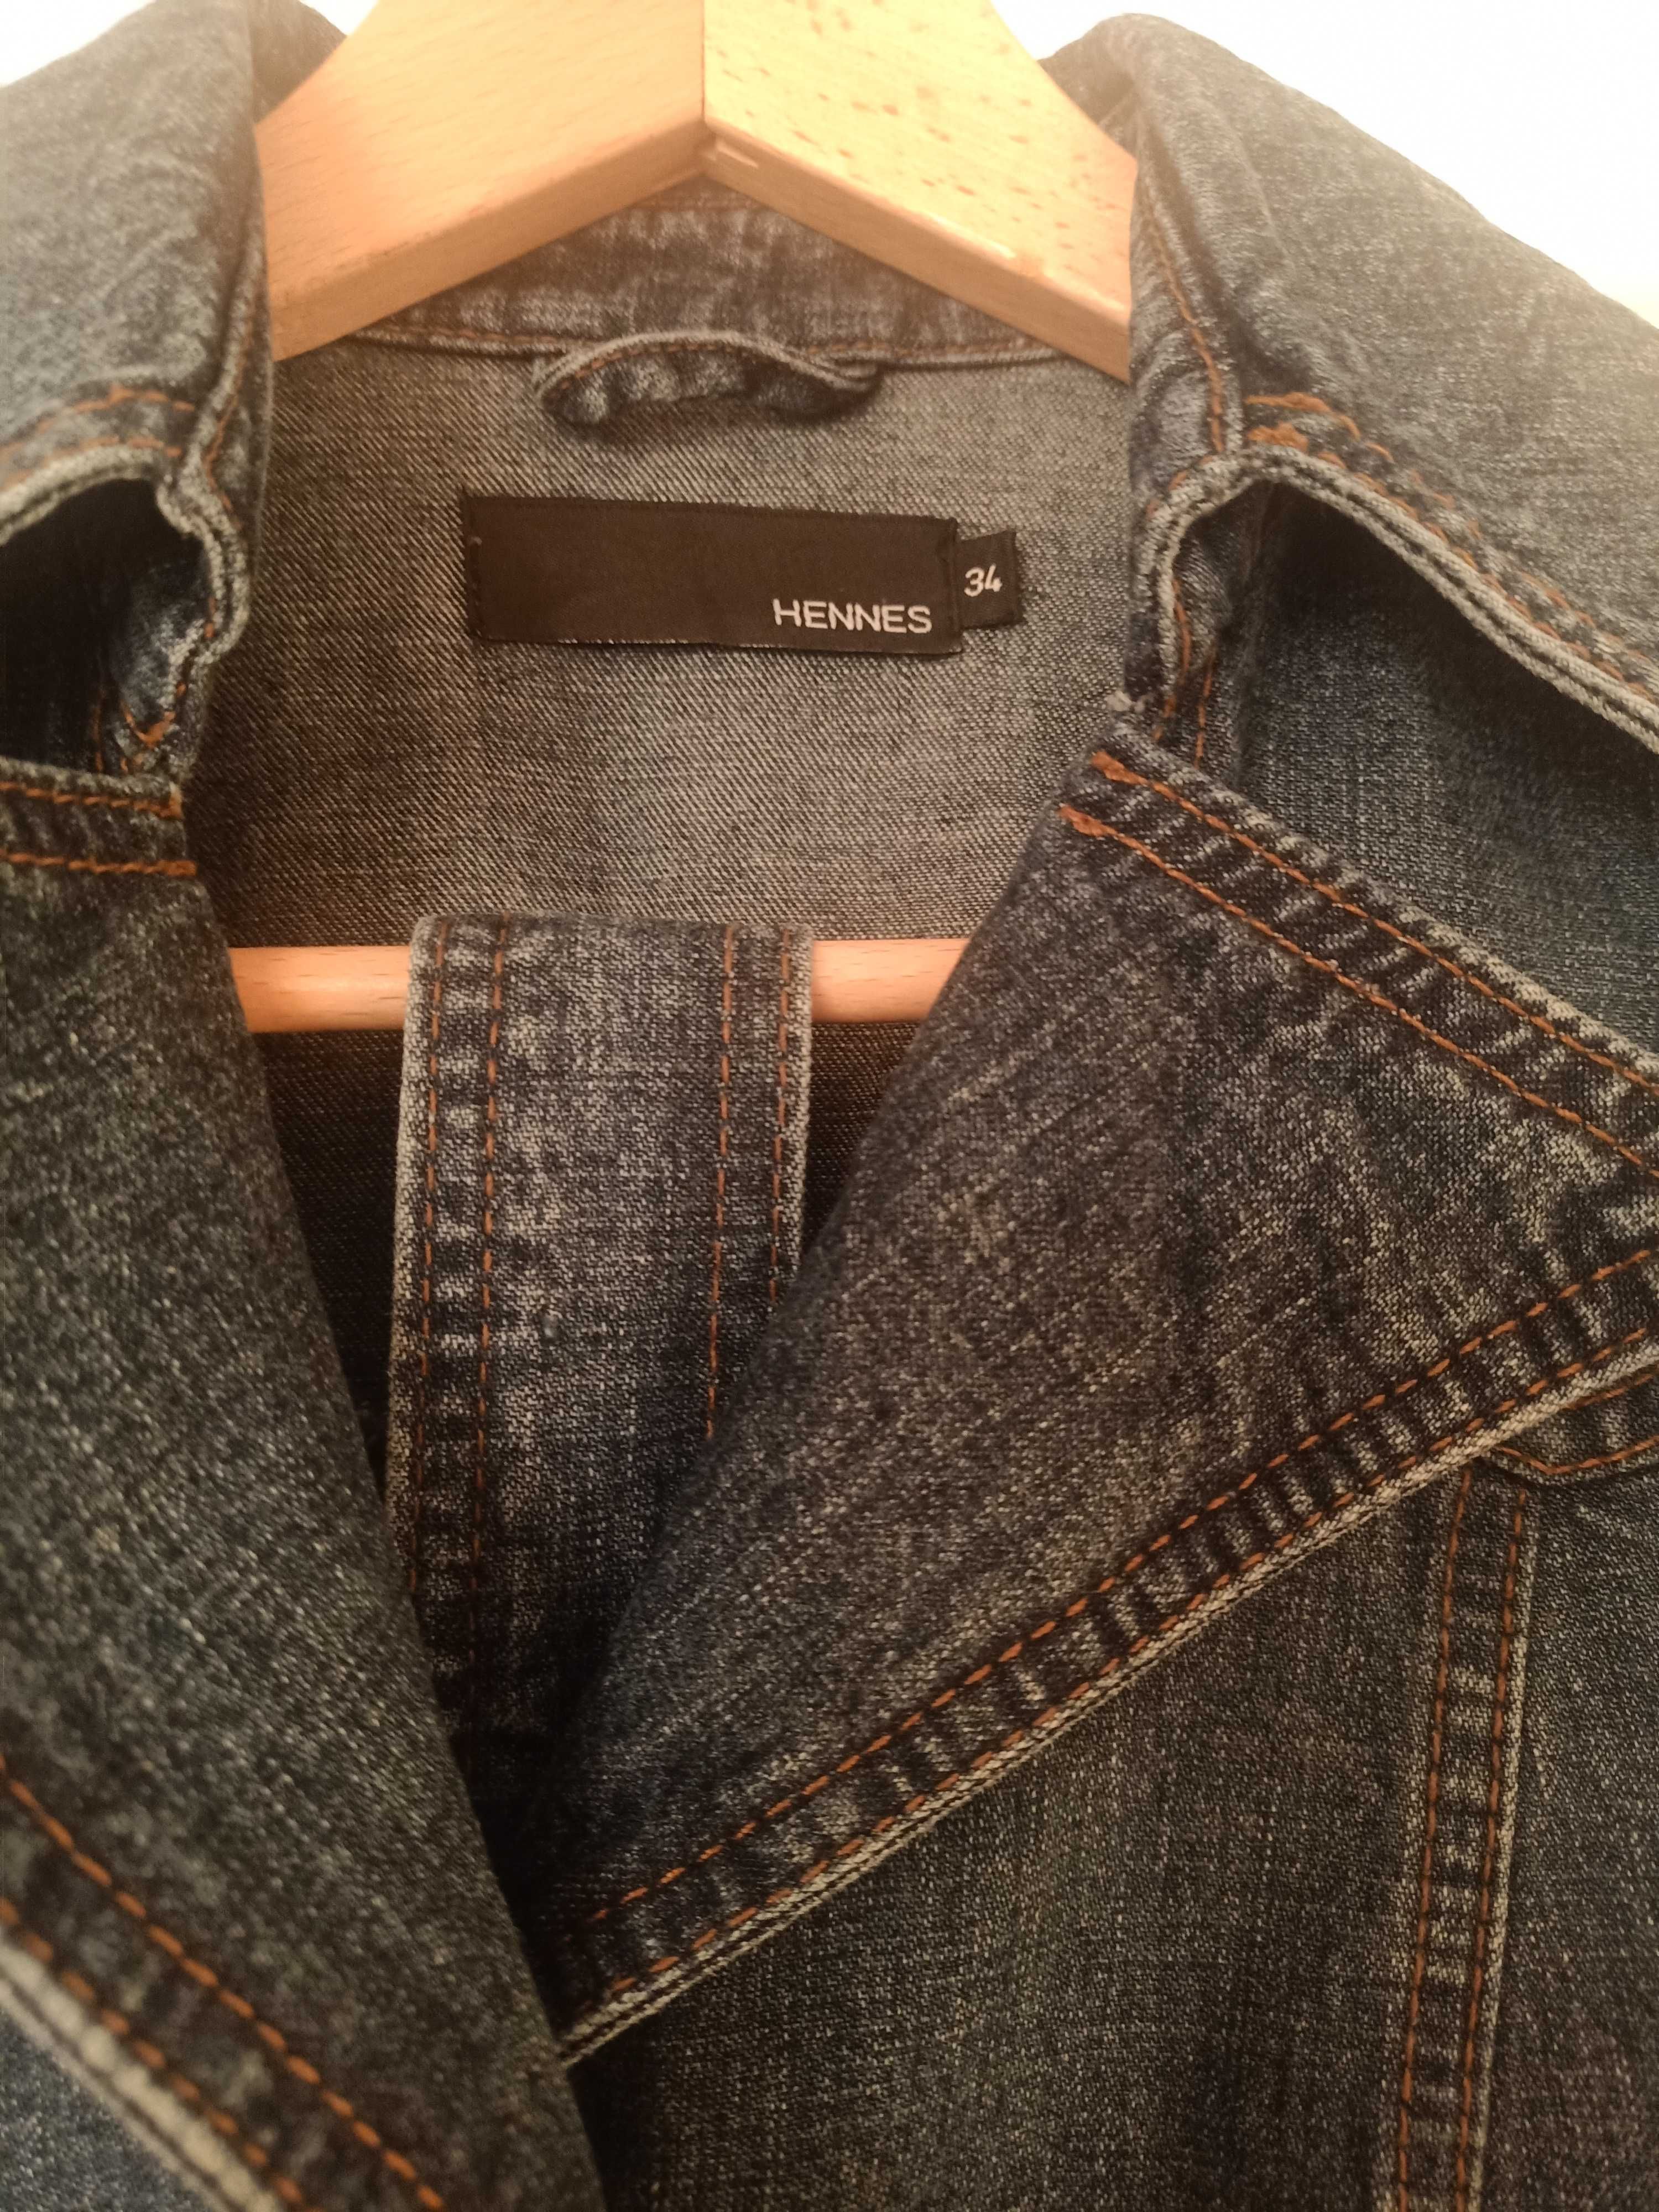 Jeansowy płaszcz damski, marki H&M, rozmiar 34, XS.